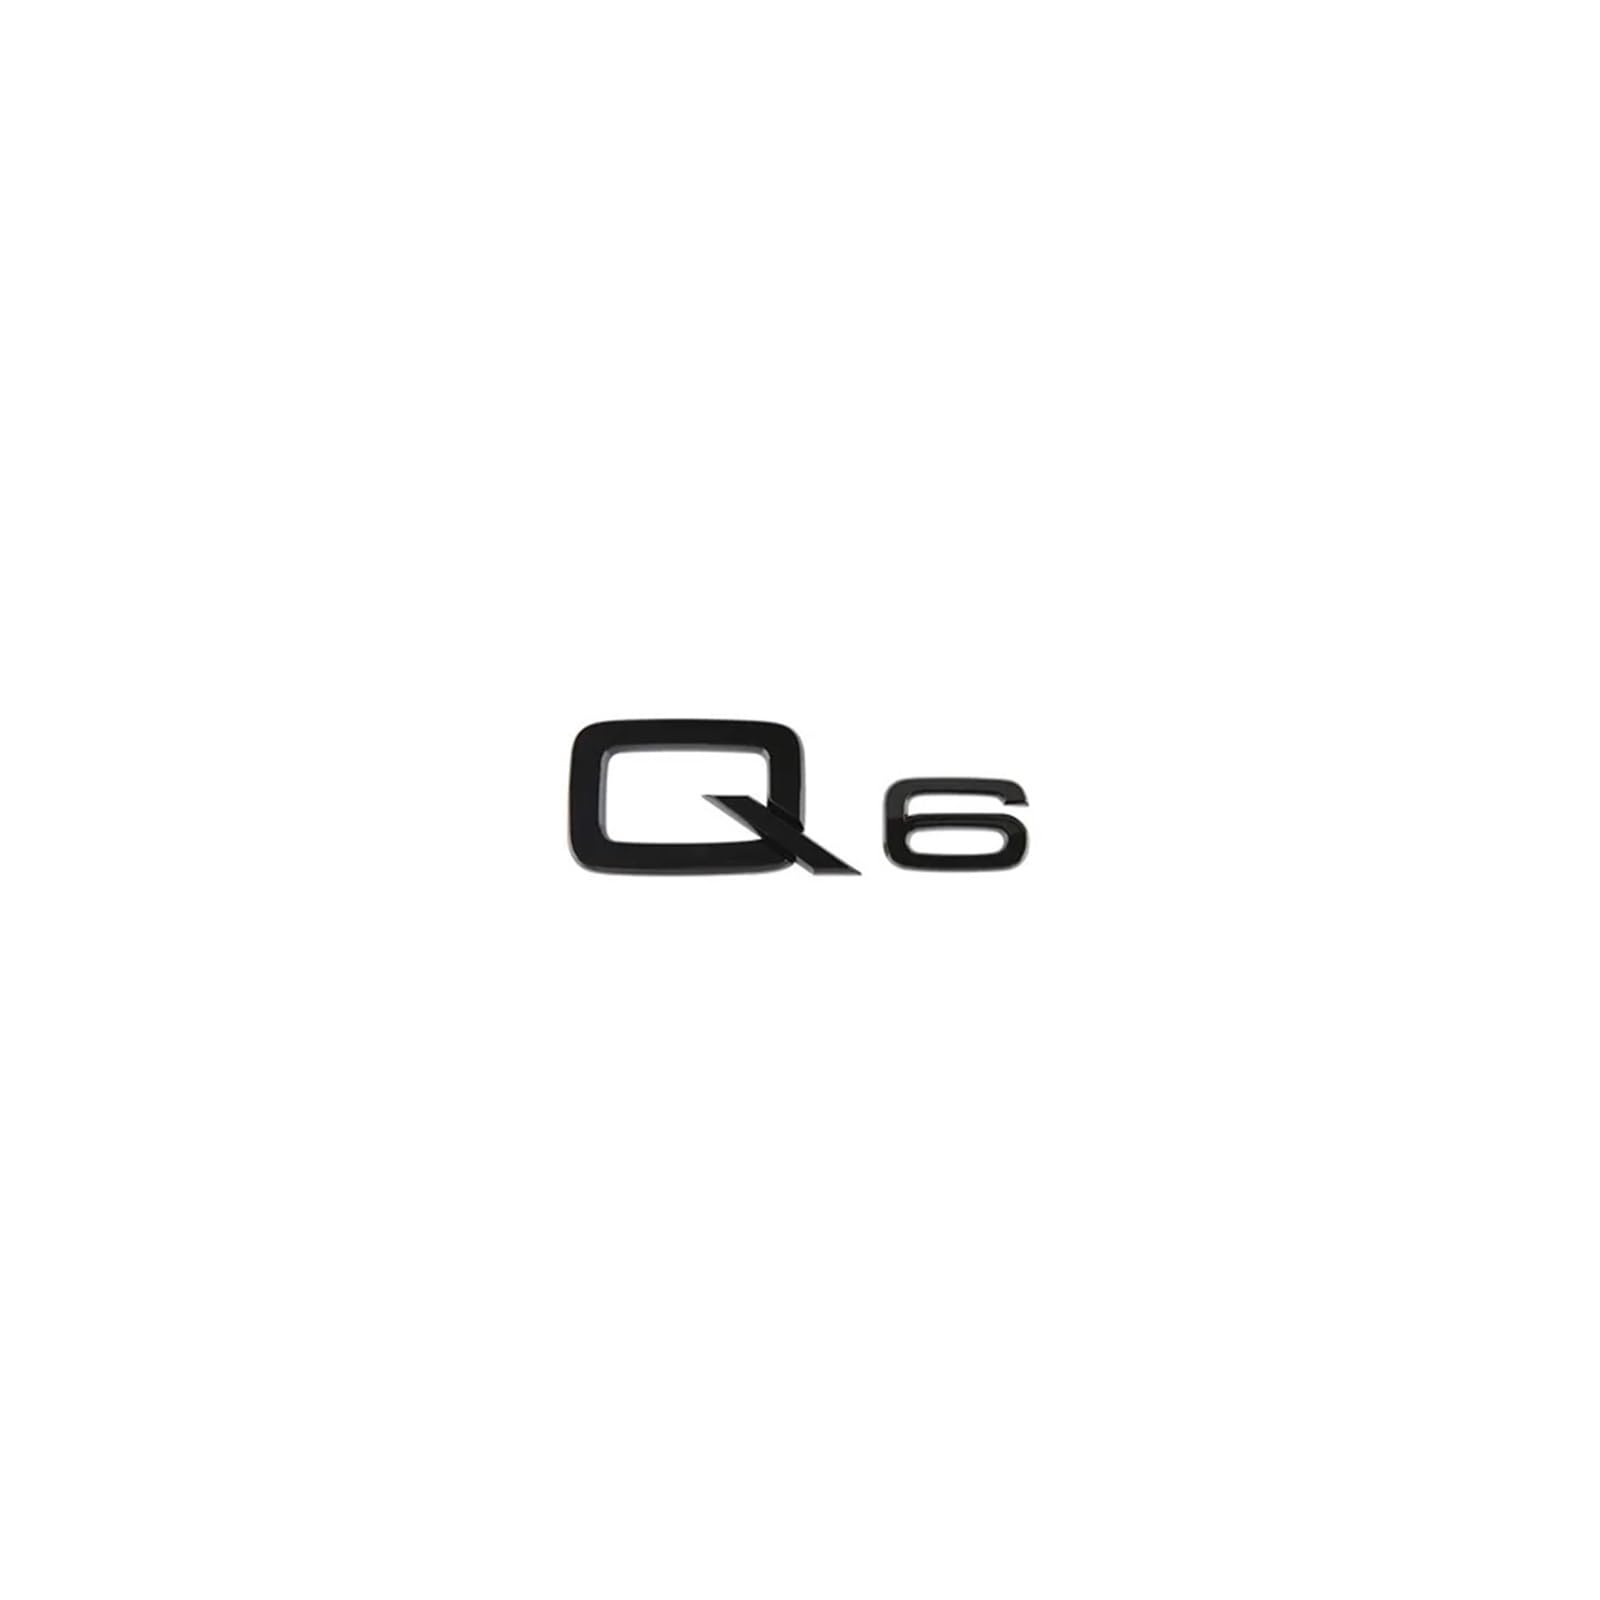 Aqxyju 3D-ABS-Zahlen-Buchstaben Q2 Q3 Q4 Q5 Q6 Q7 Q8-Emblem, kompatibel mit Q-Serie, Kofferraum-Heck-Logo-Aufkleber, Schwarz/Silber Personalisierte Auto Aufkleber(Glossy black Q6) von Aqxyju